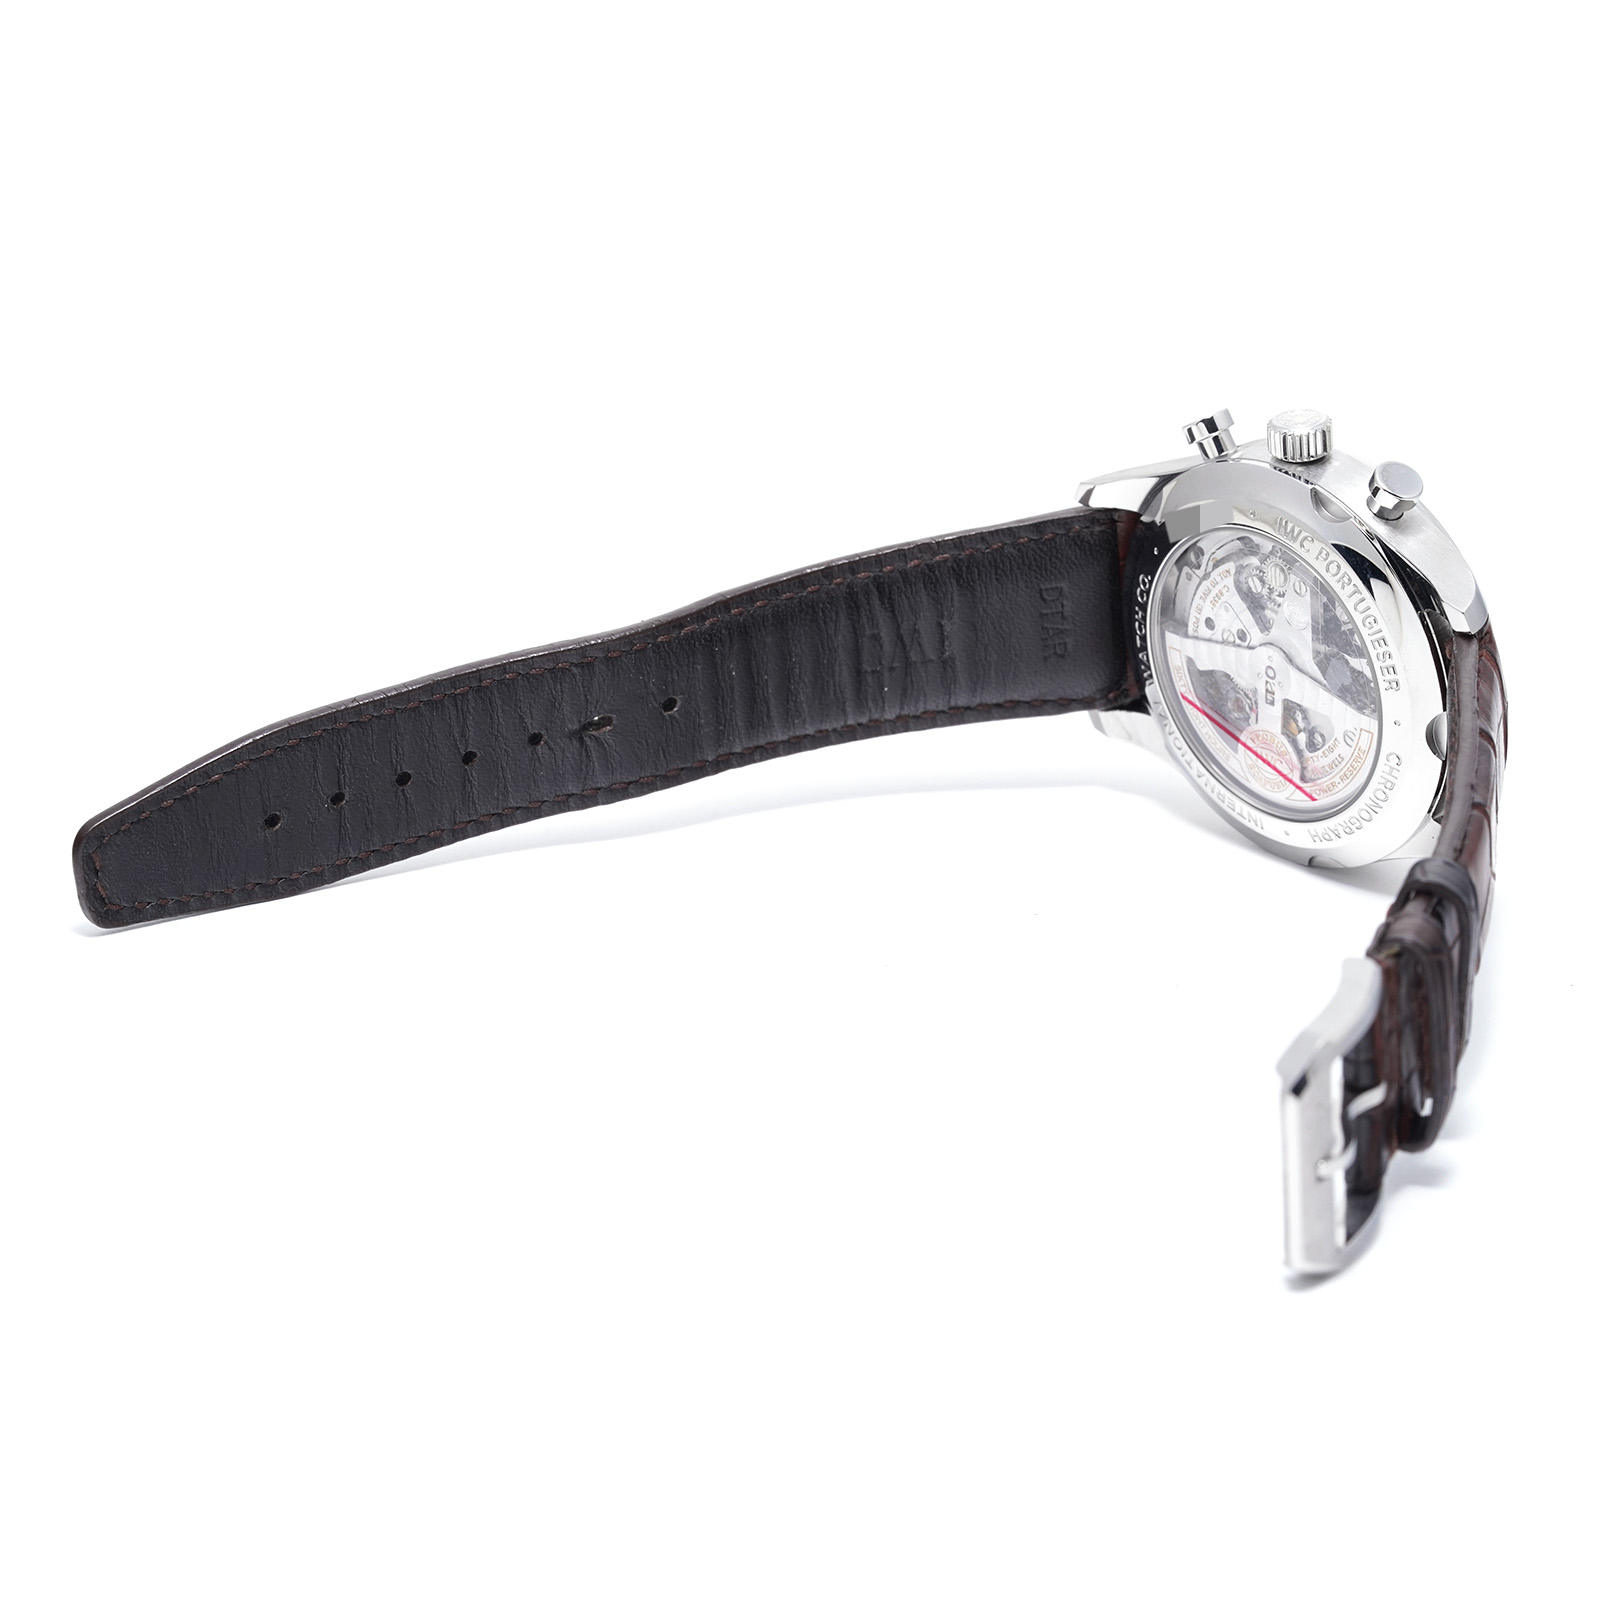 S'FACTORY 腕時計 クロノグラフ腕時計 ホワイト×シルバー メンズ腕時計